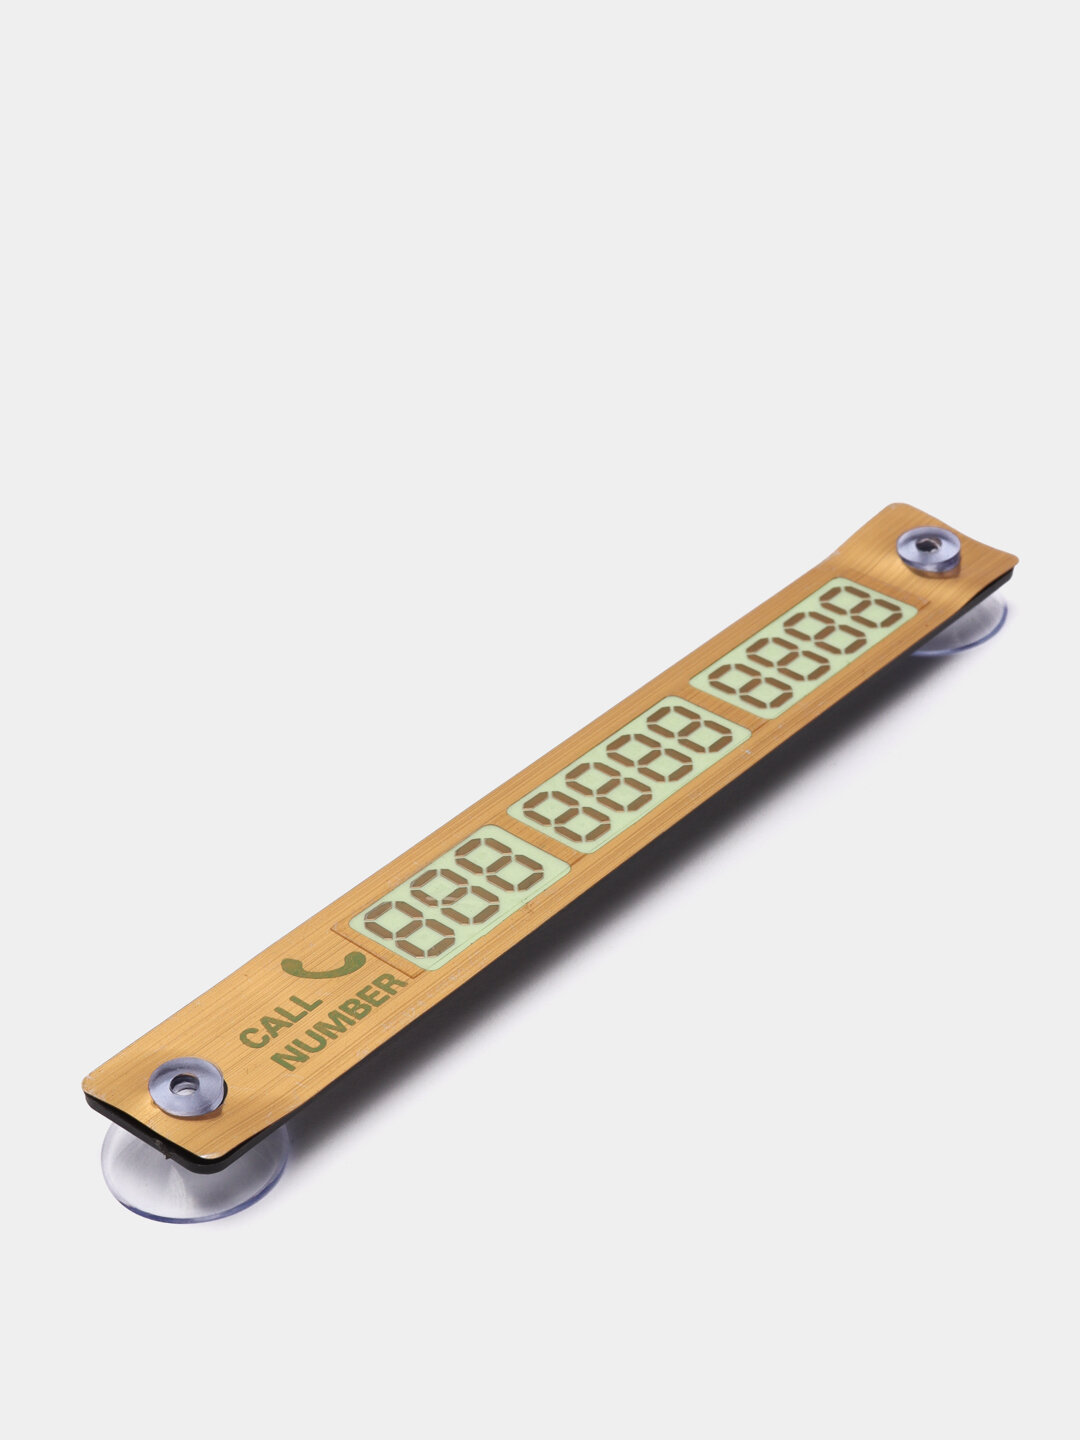 Номерок телефона на лобовое стекло с присосками ( автовизитка, визитка, номер ) Цвет Золотой